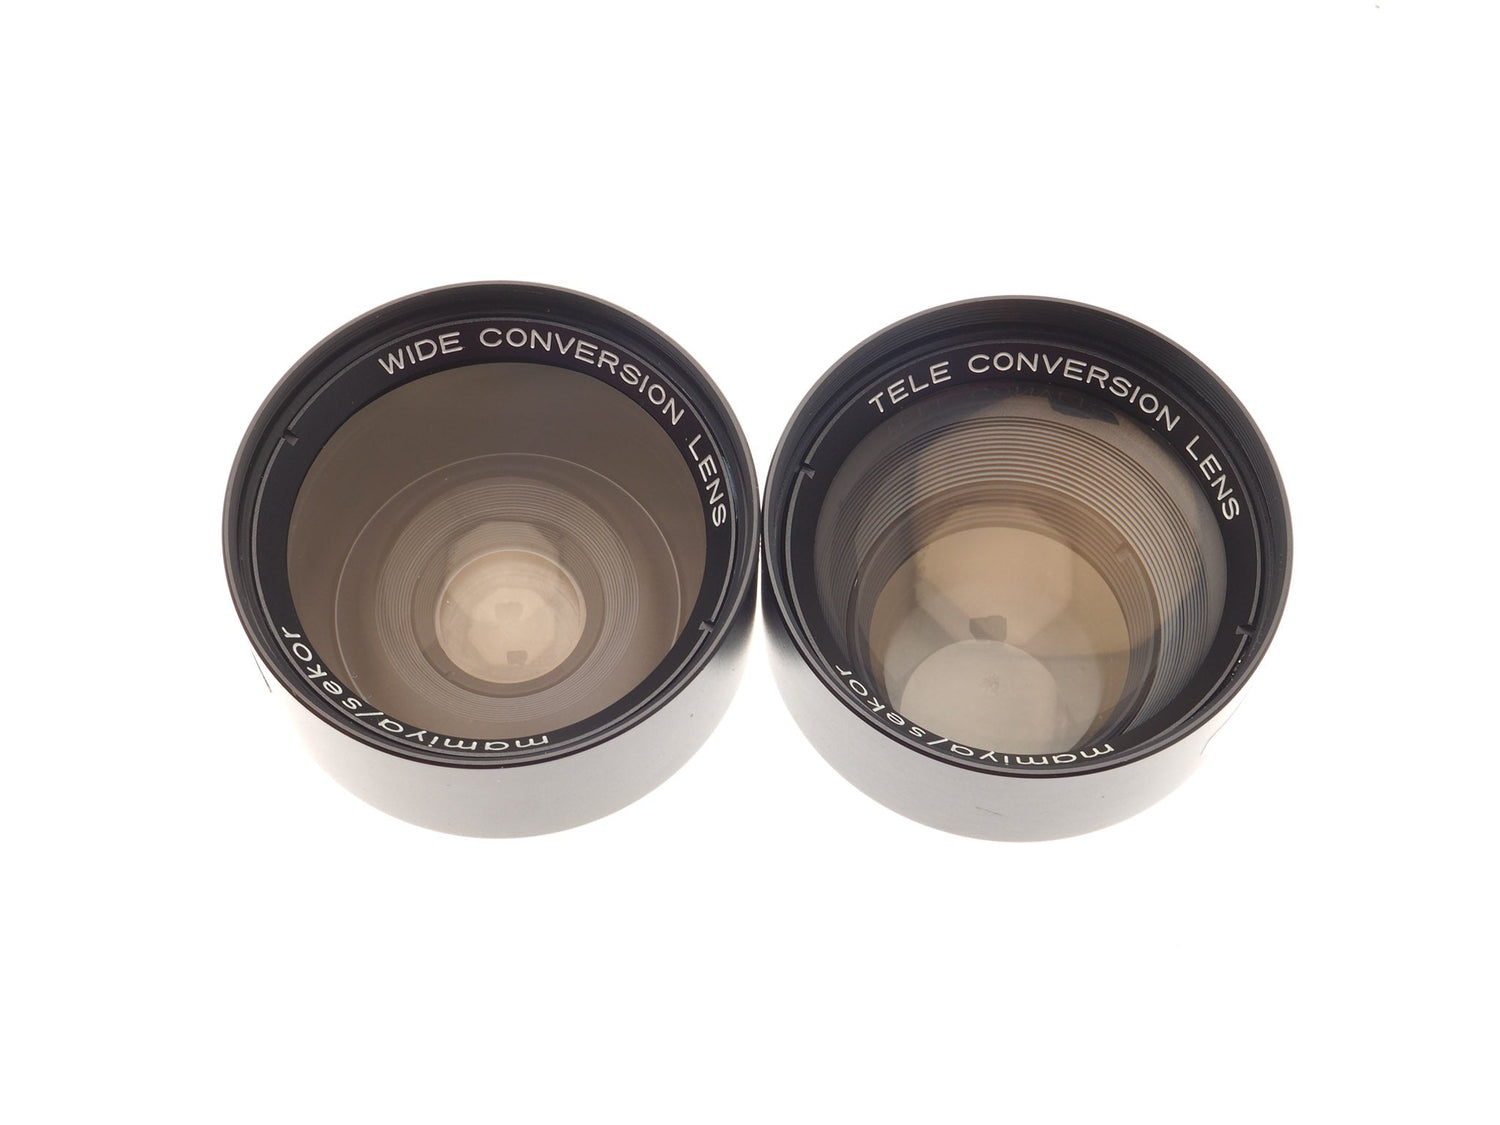 wide conversion lens